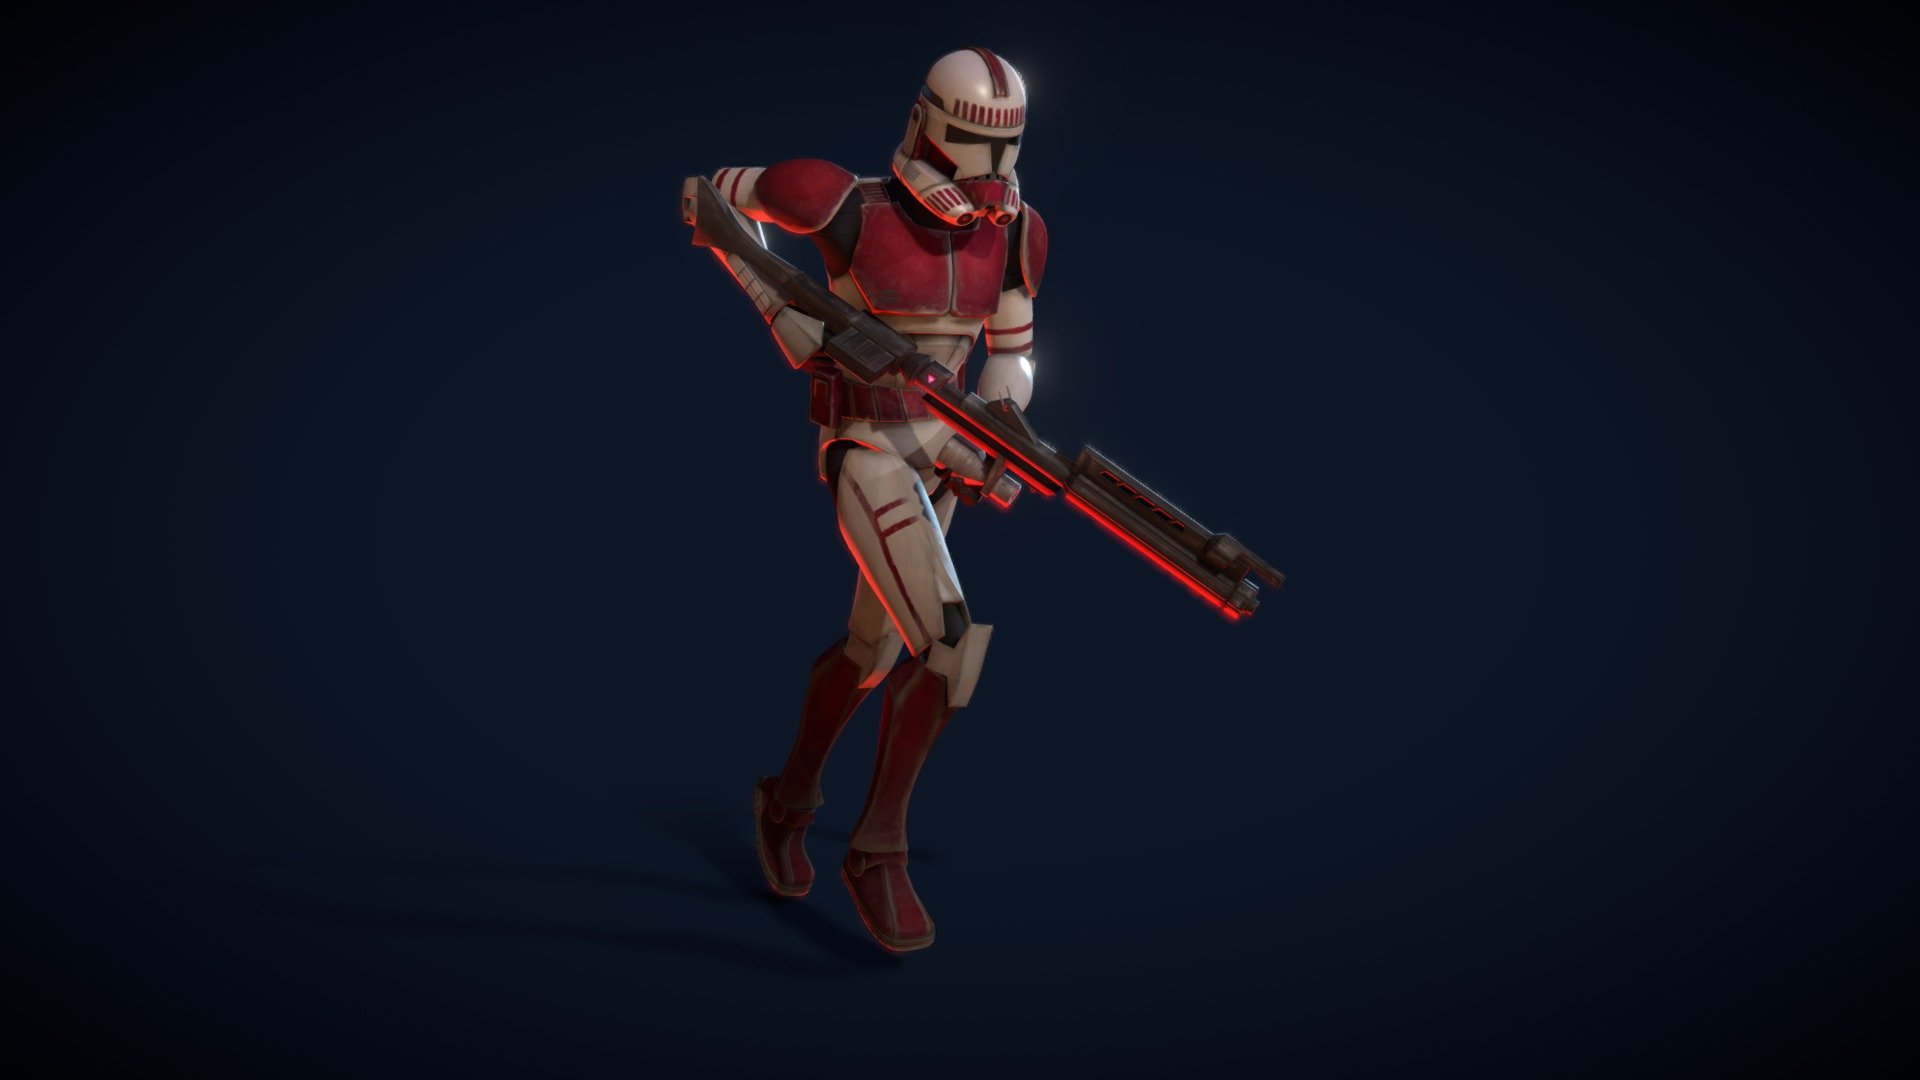 Clone Trooper Phase 2